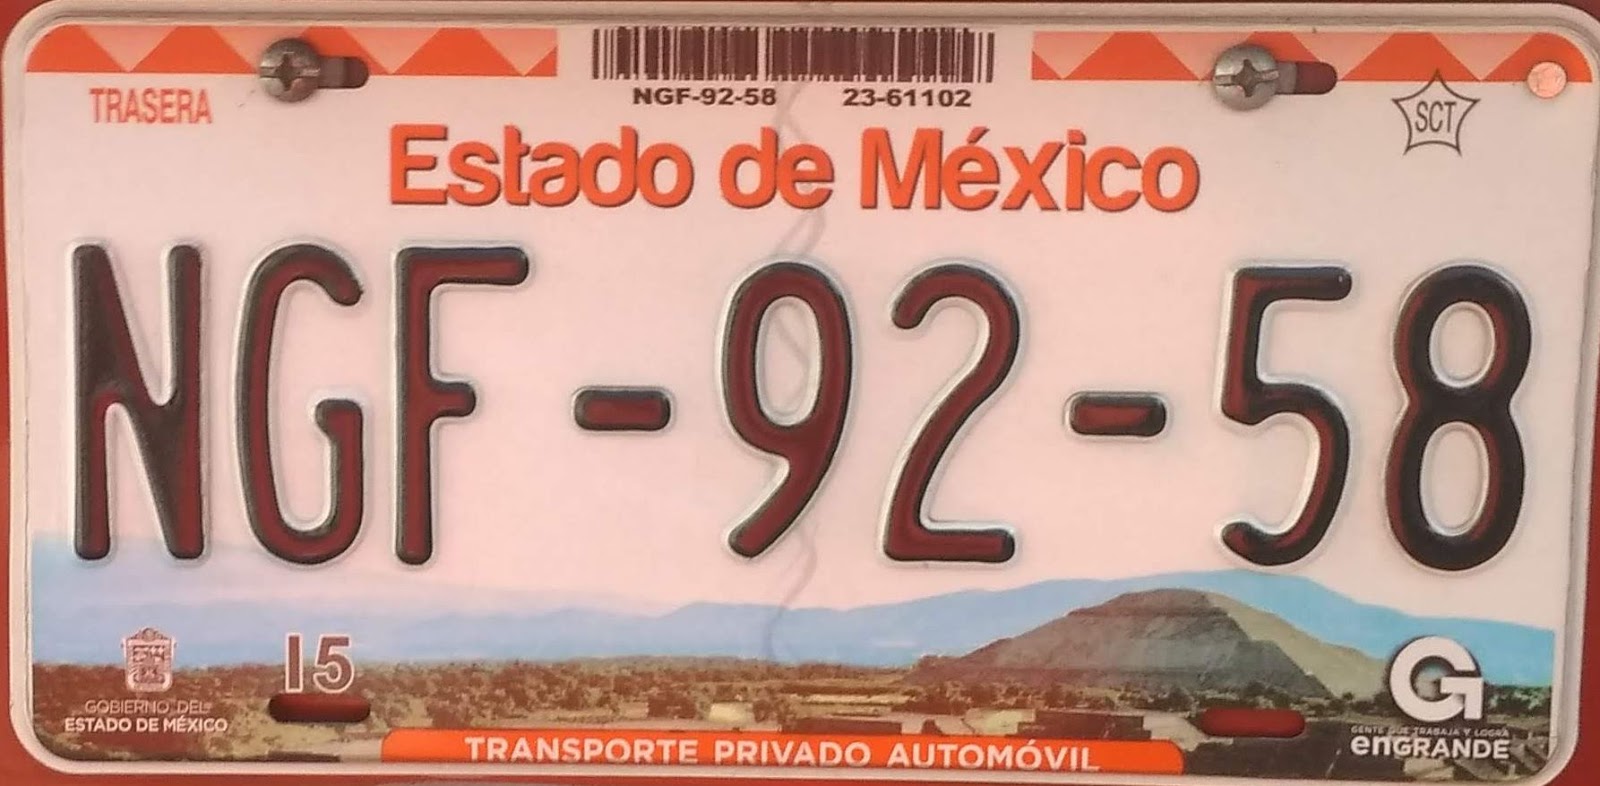 Placas de Autos de México y otras COS999AS 2020